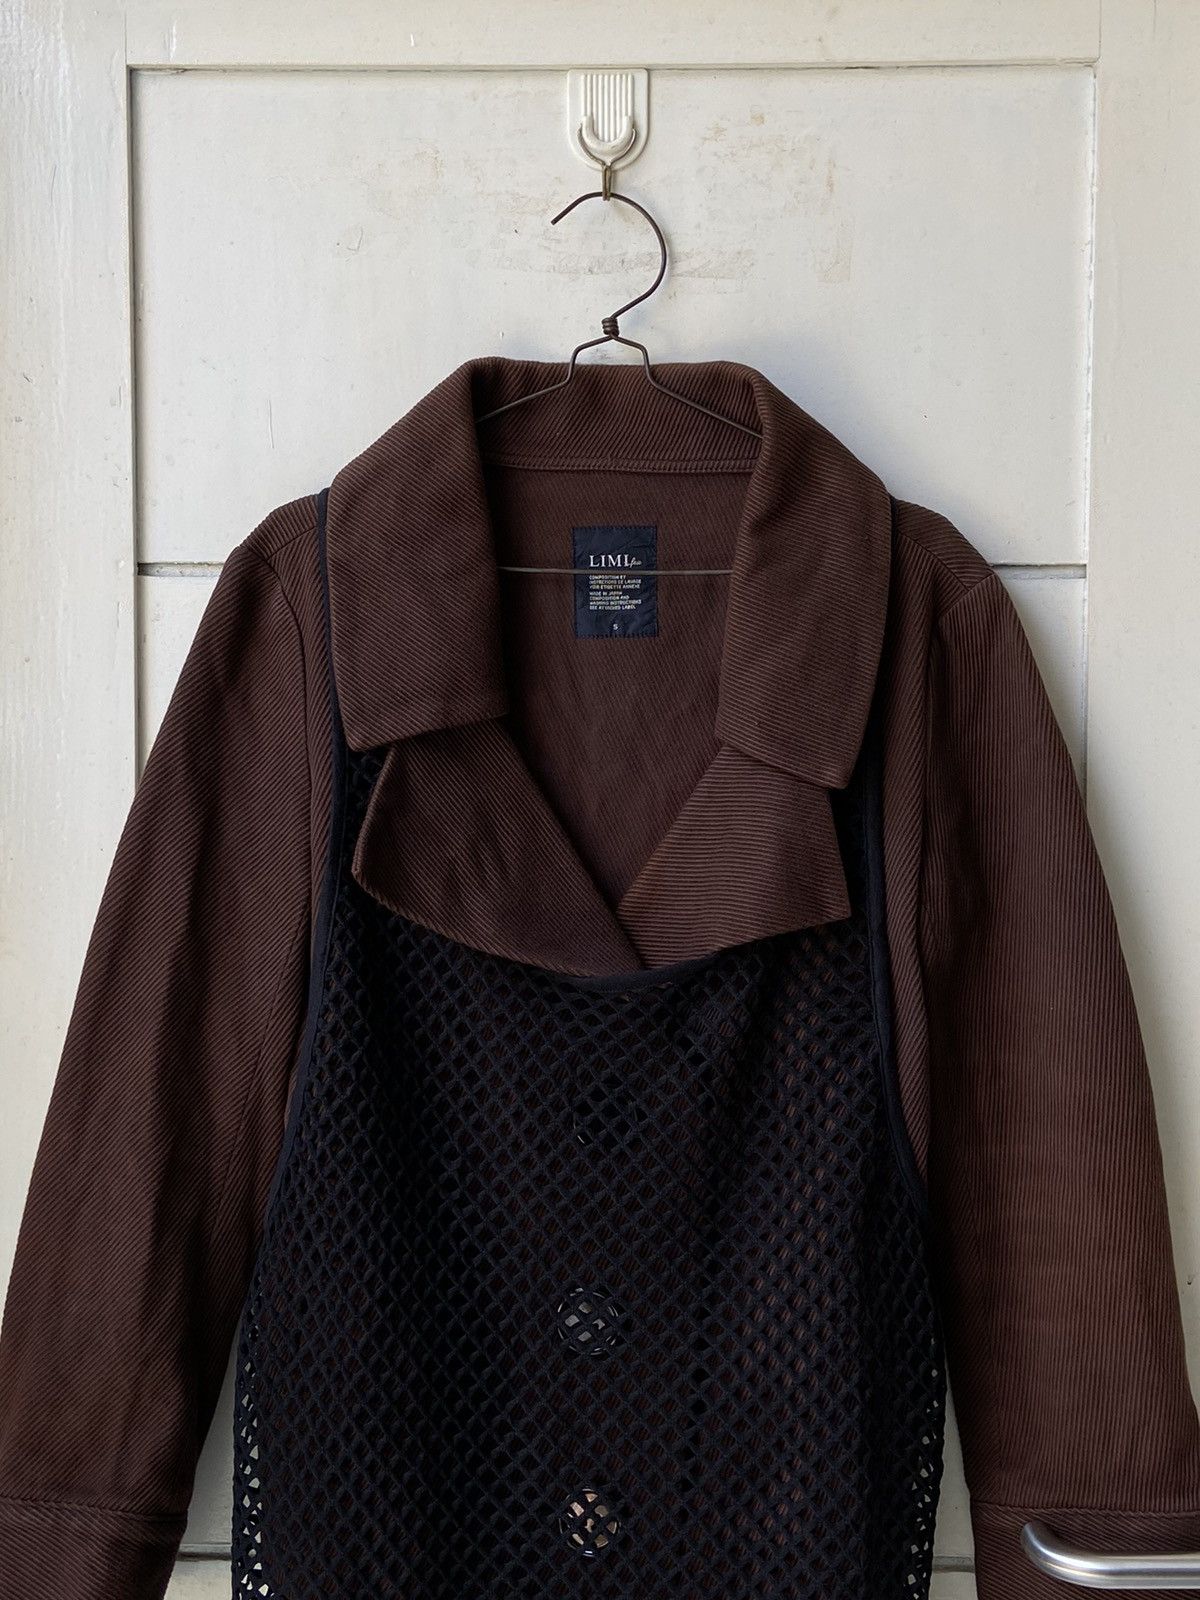 Yohji Yamamoto LIMI FEU Brown Blazer Vest Size US S / EU 44-46 / 1 - 2 Preview